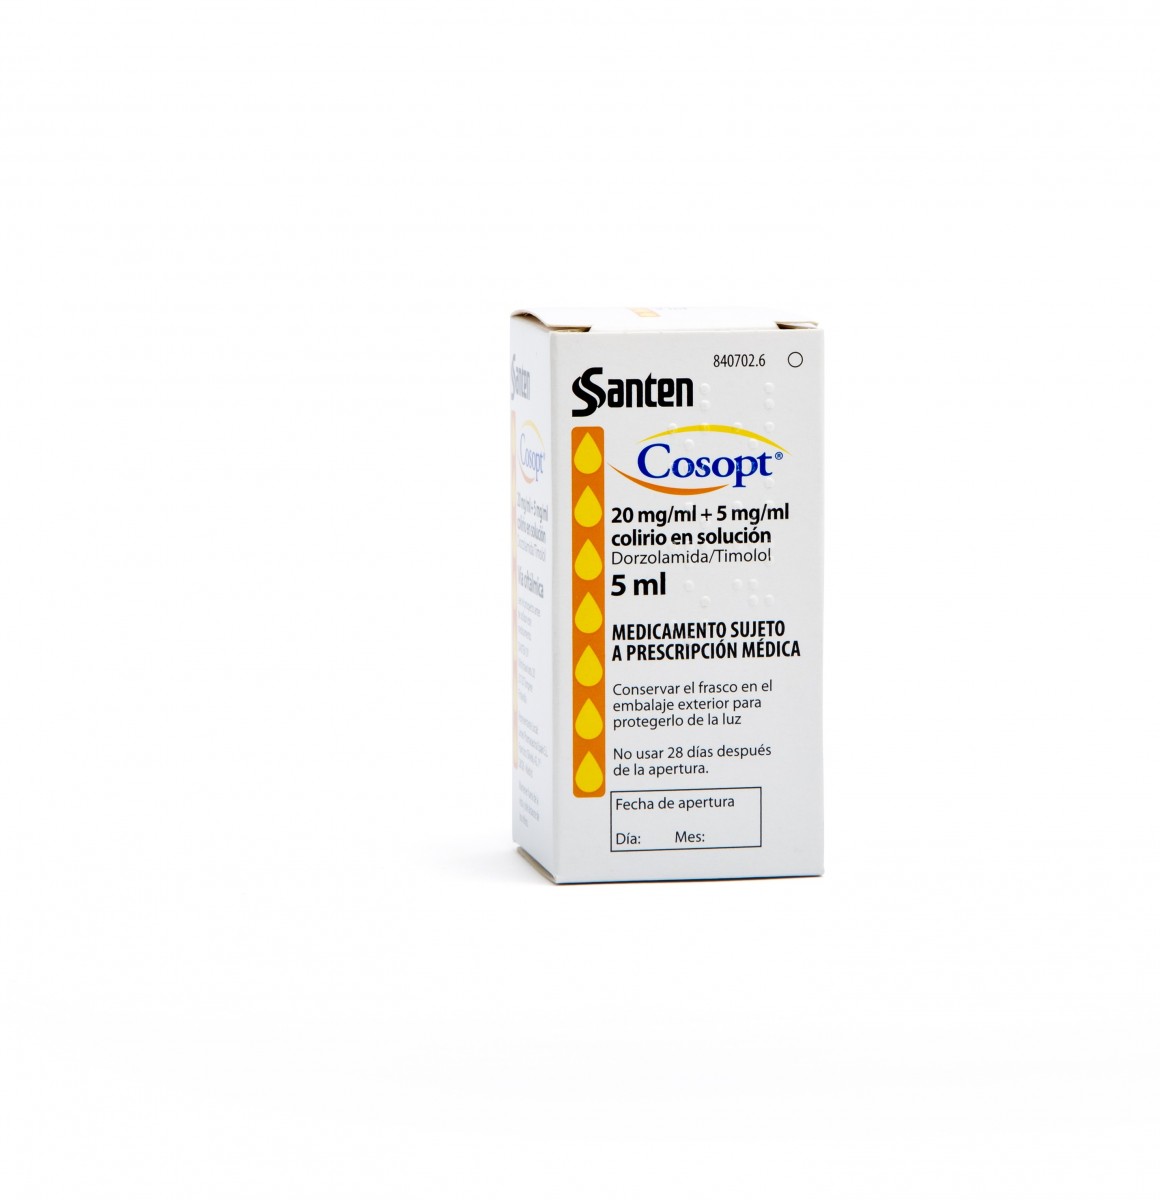 COSOPT 20 mg/ml + 5 mg/ml COLIRIO EN SOLUCION, 1 frasco de 5 ml fotografía del envase.